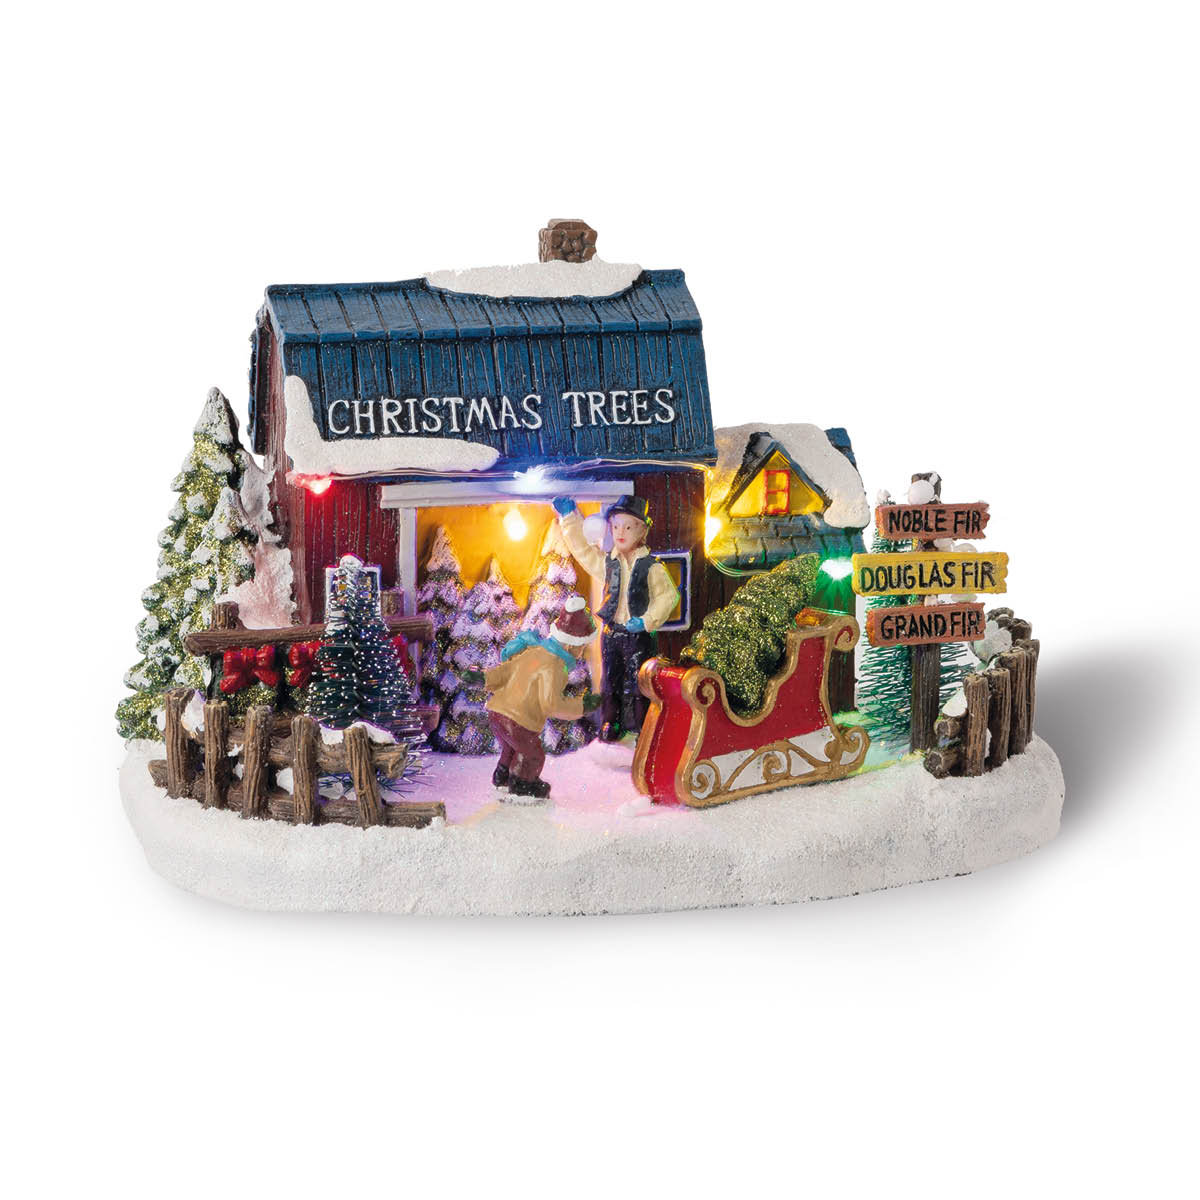 Villaggi di Natale – Il negozio degli Alberi di Natale